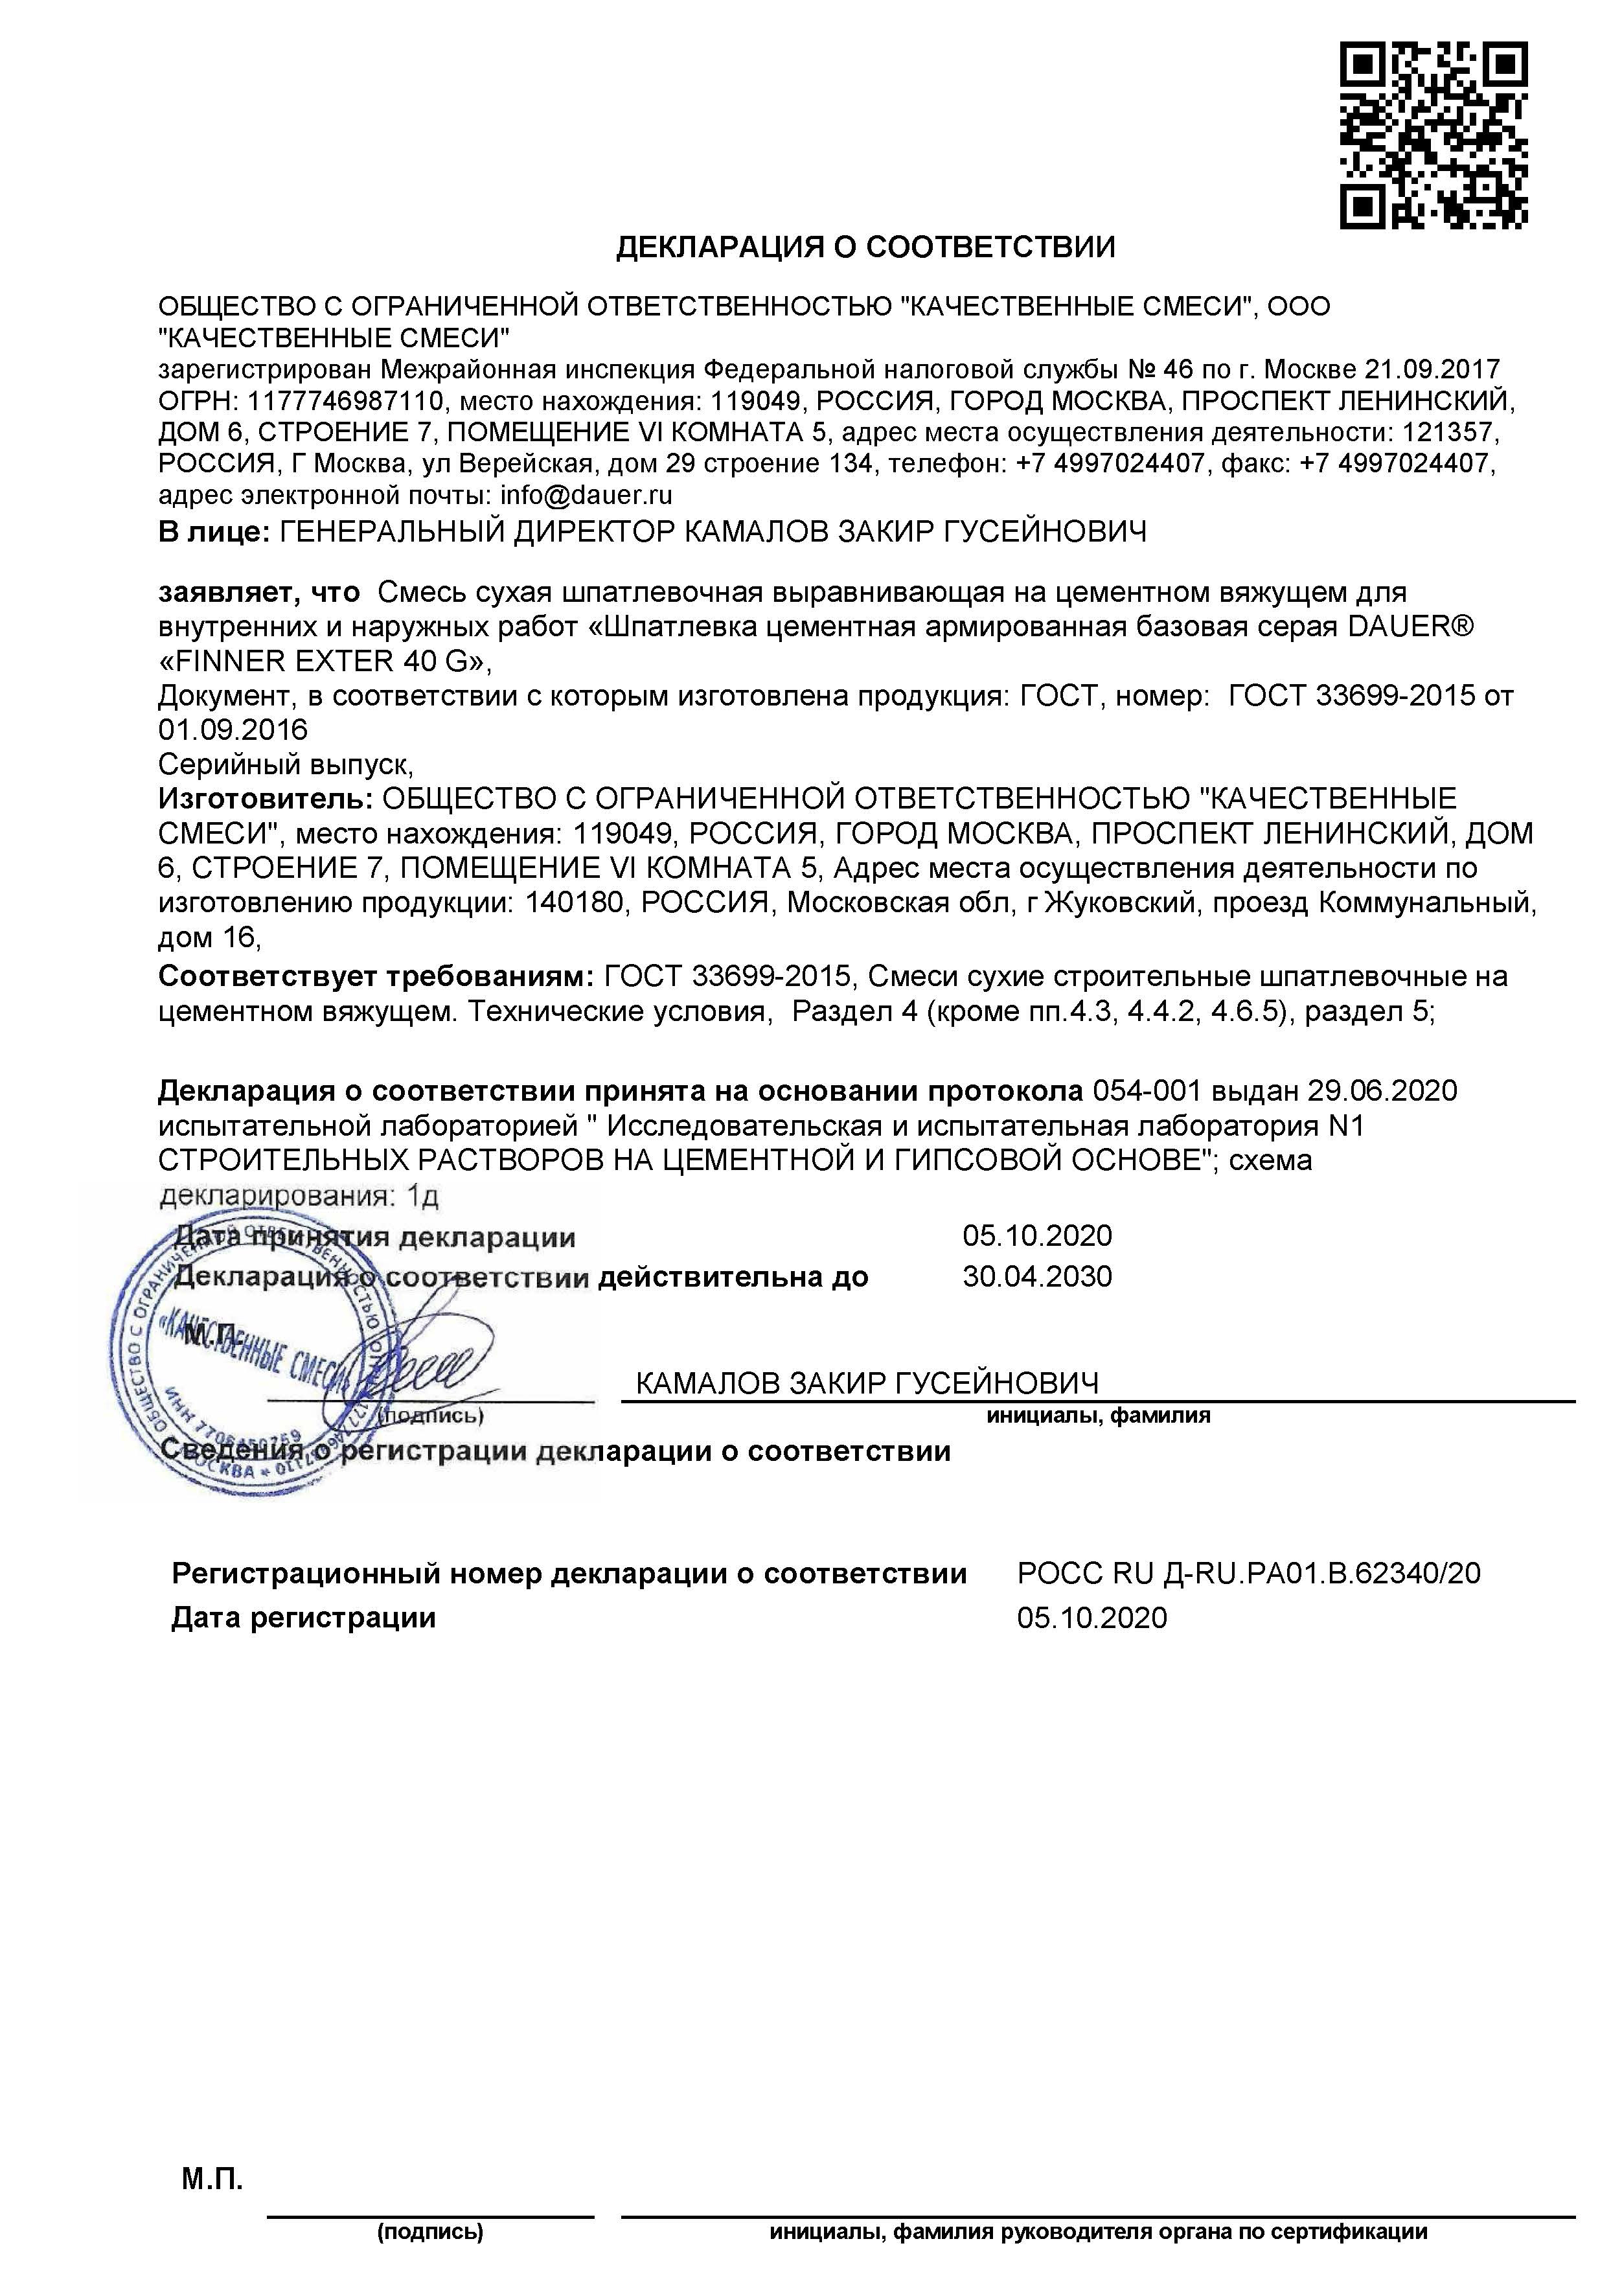 Декларации. FINNER EXTER 40 G Шпатлевка цементная армированная базовая серая (лето и зима)